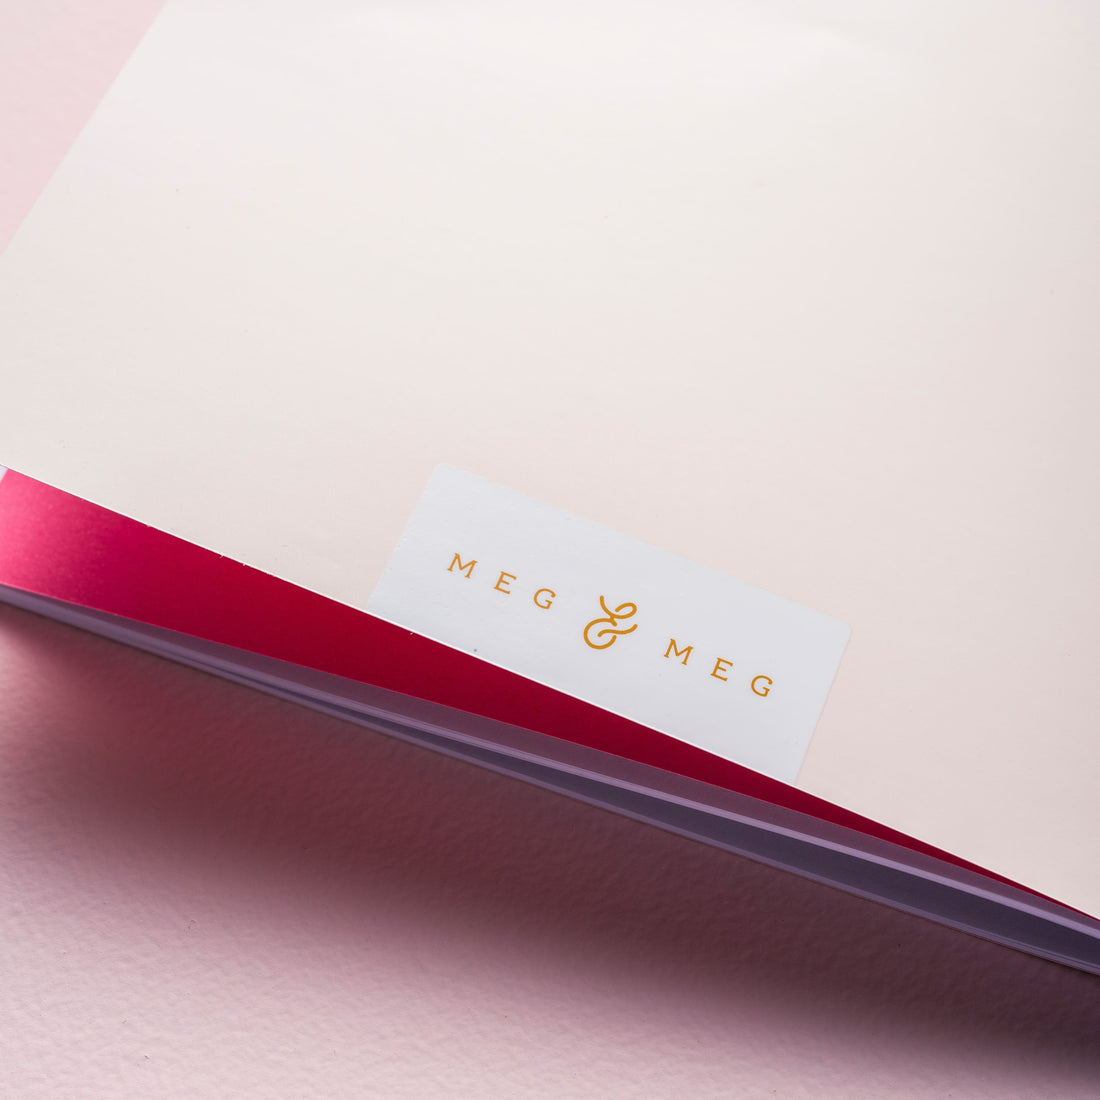 detalhe do caderno de planejamento mensal sobre fundo liso rosa